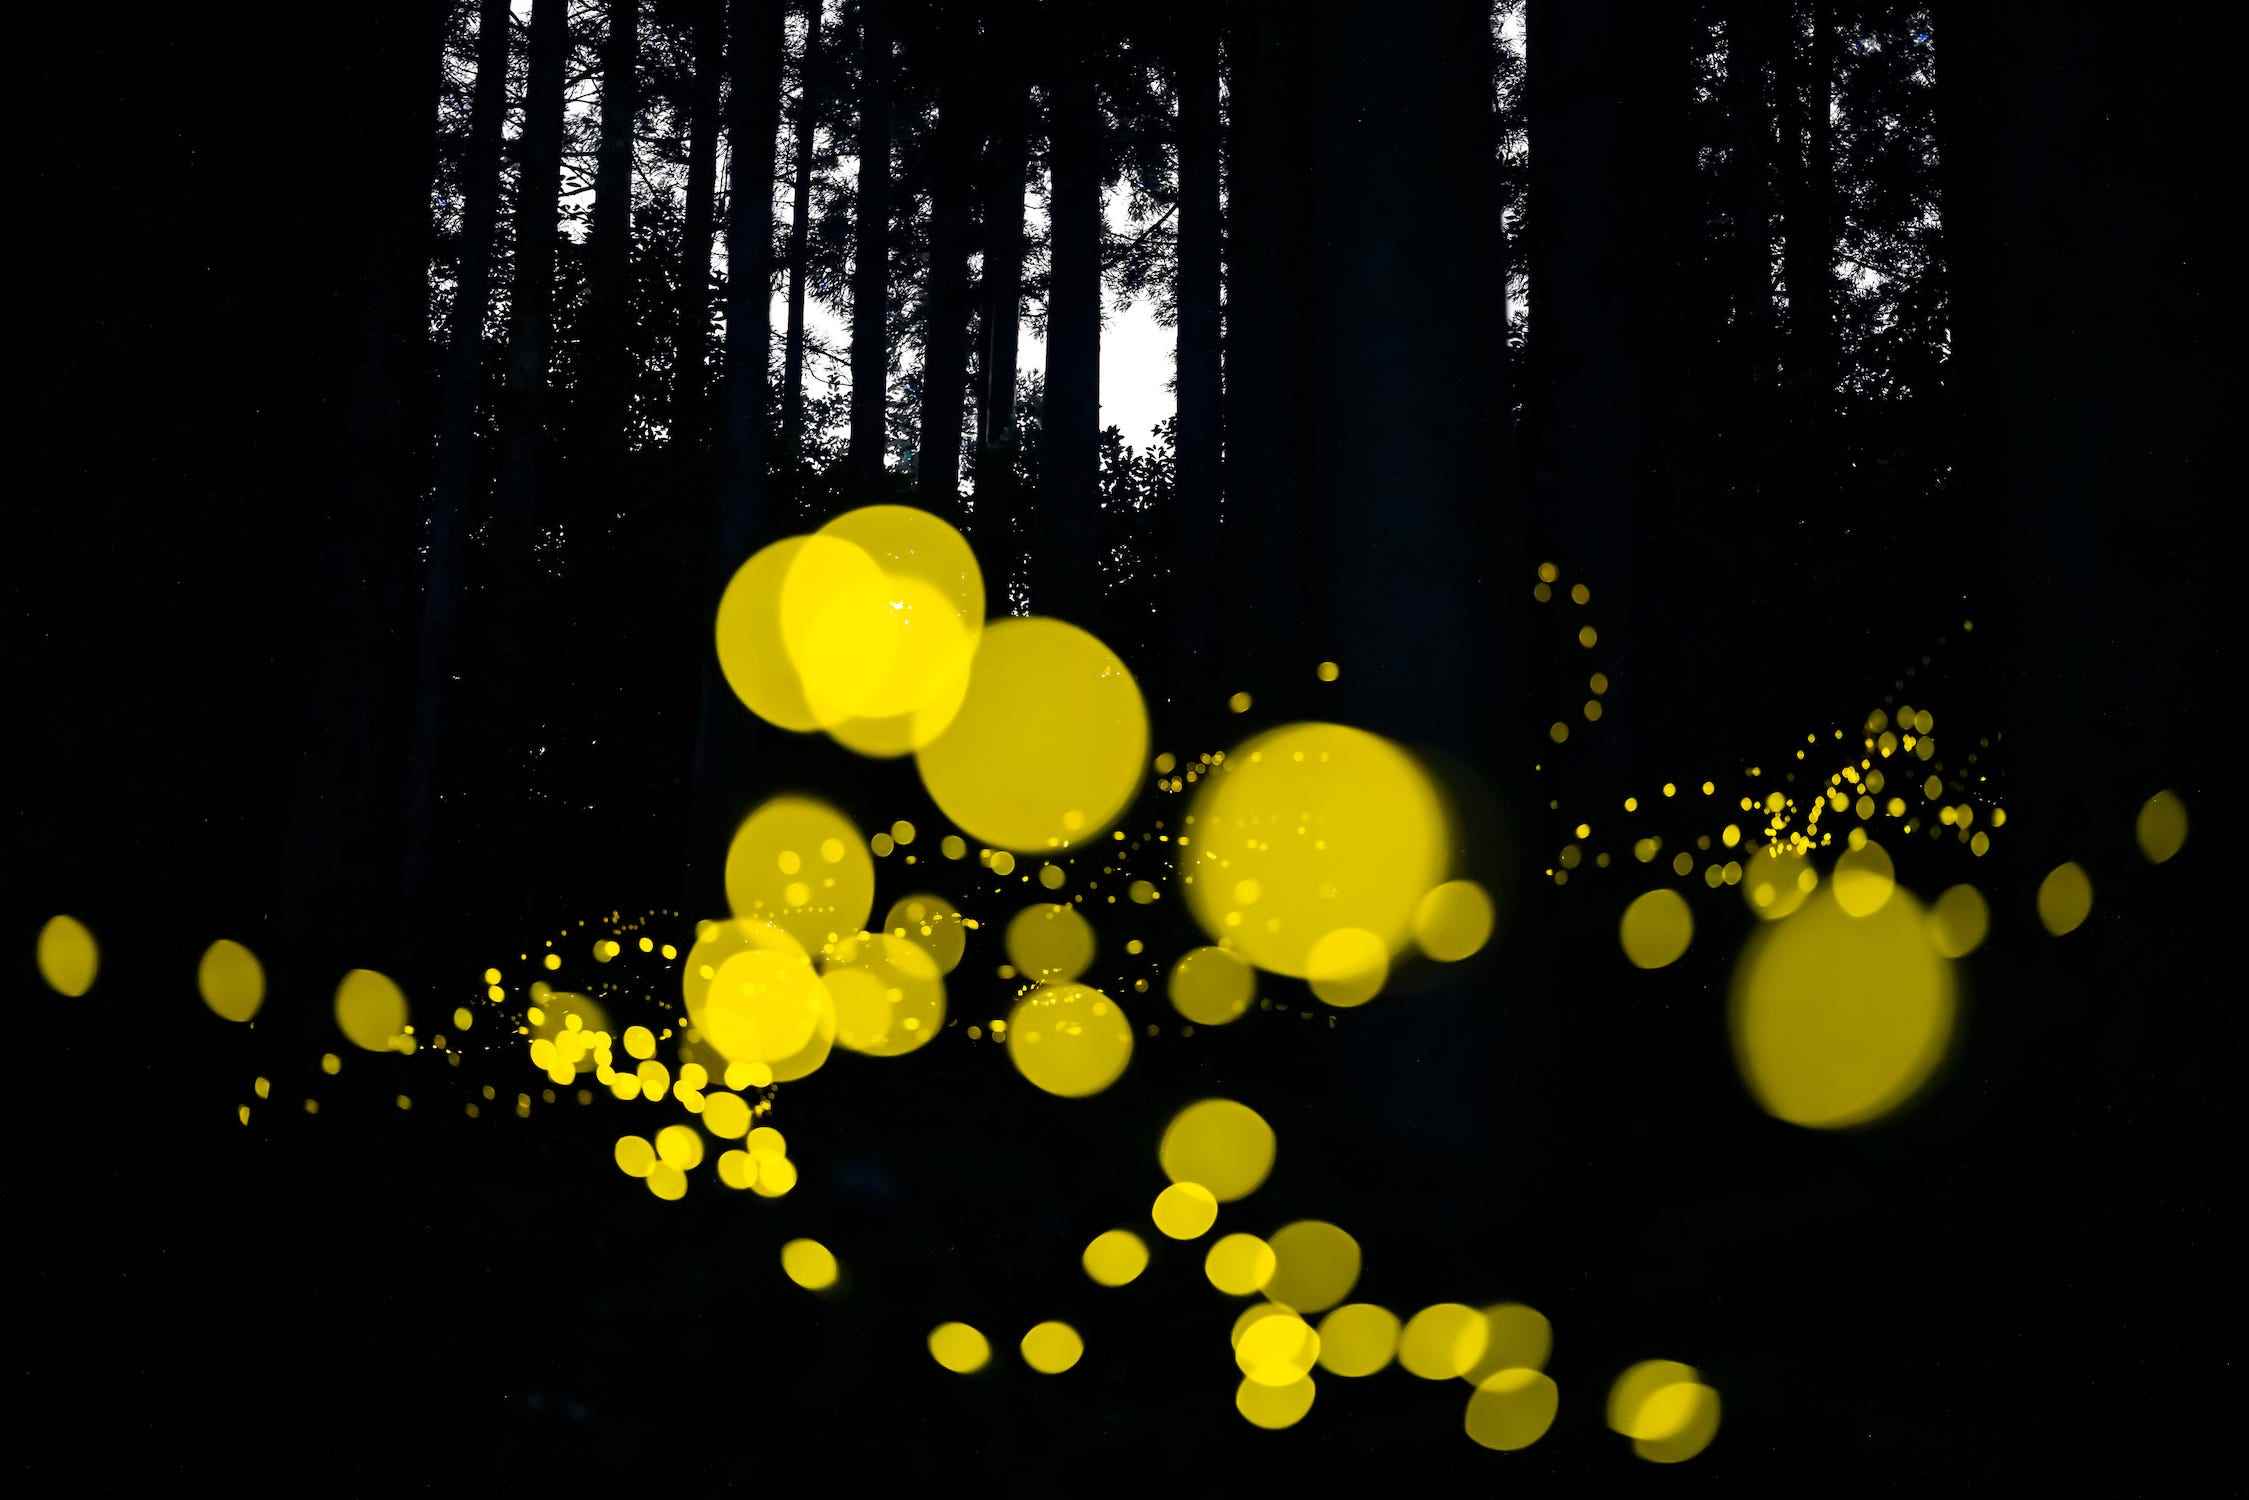 Kreise aus gelbem Licht in dunklen schwarzen Wäldern